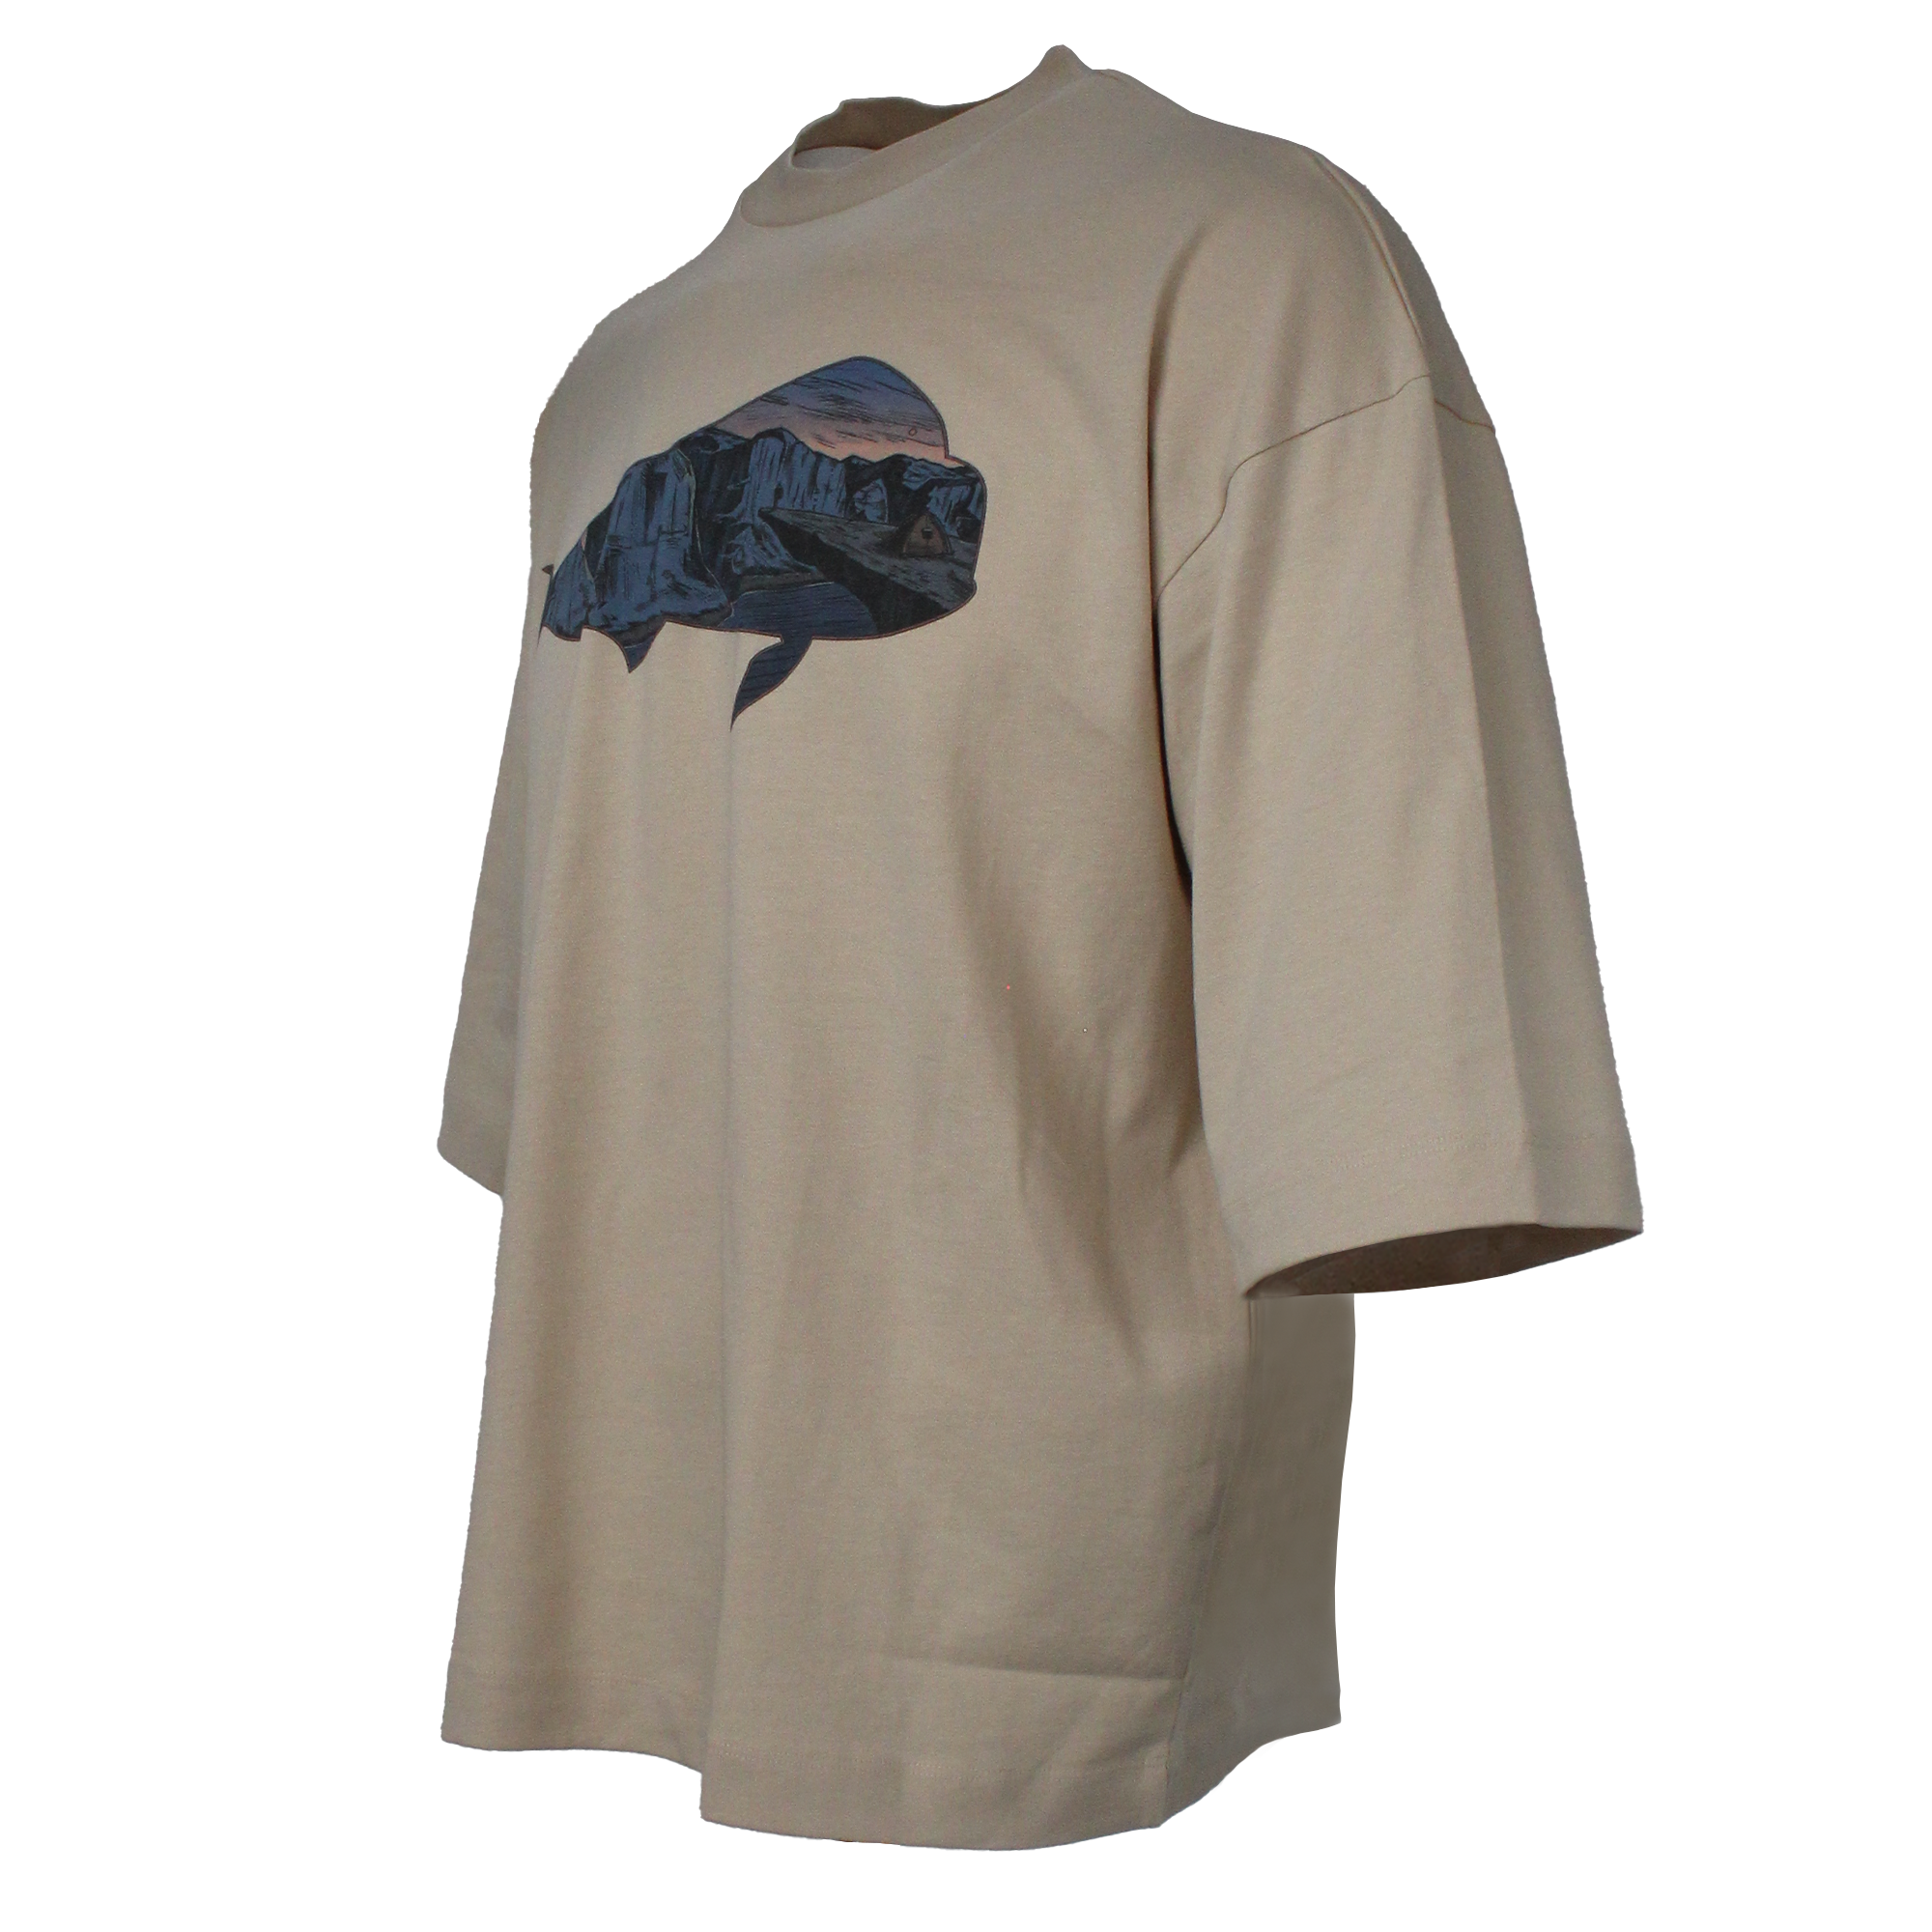 Bora Bora Loose T-Shirt - Mahi Mahi - Bej